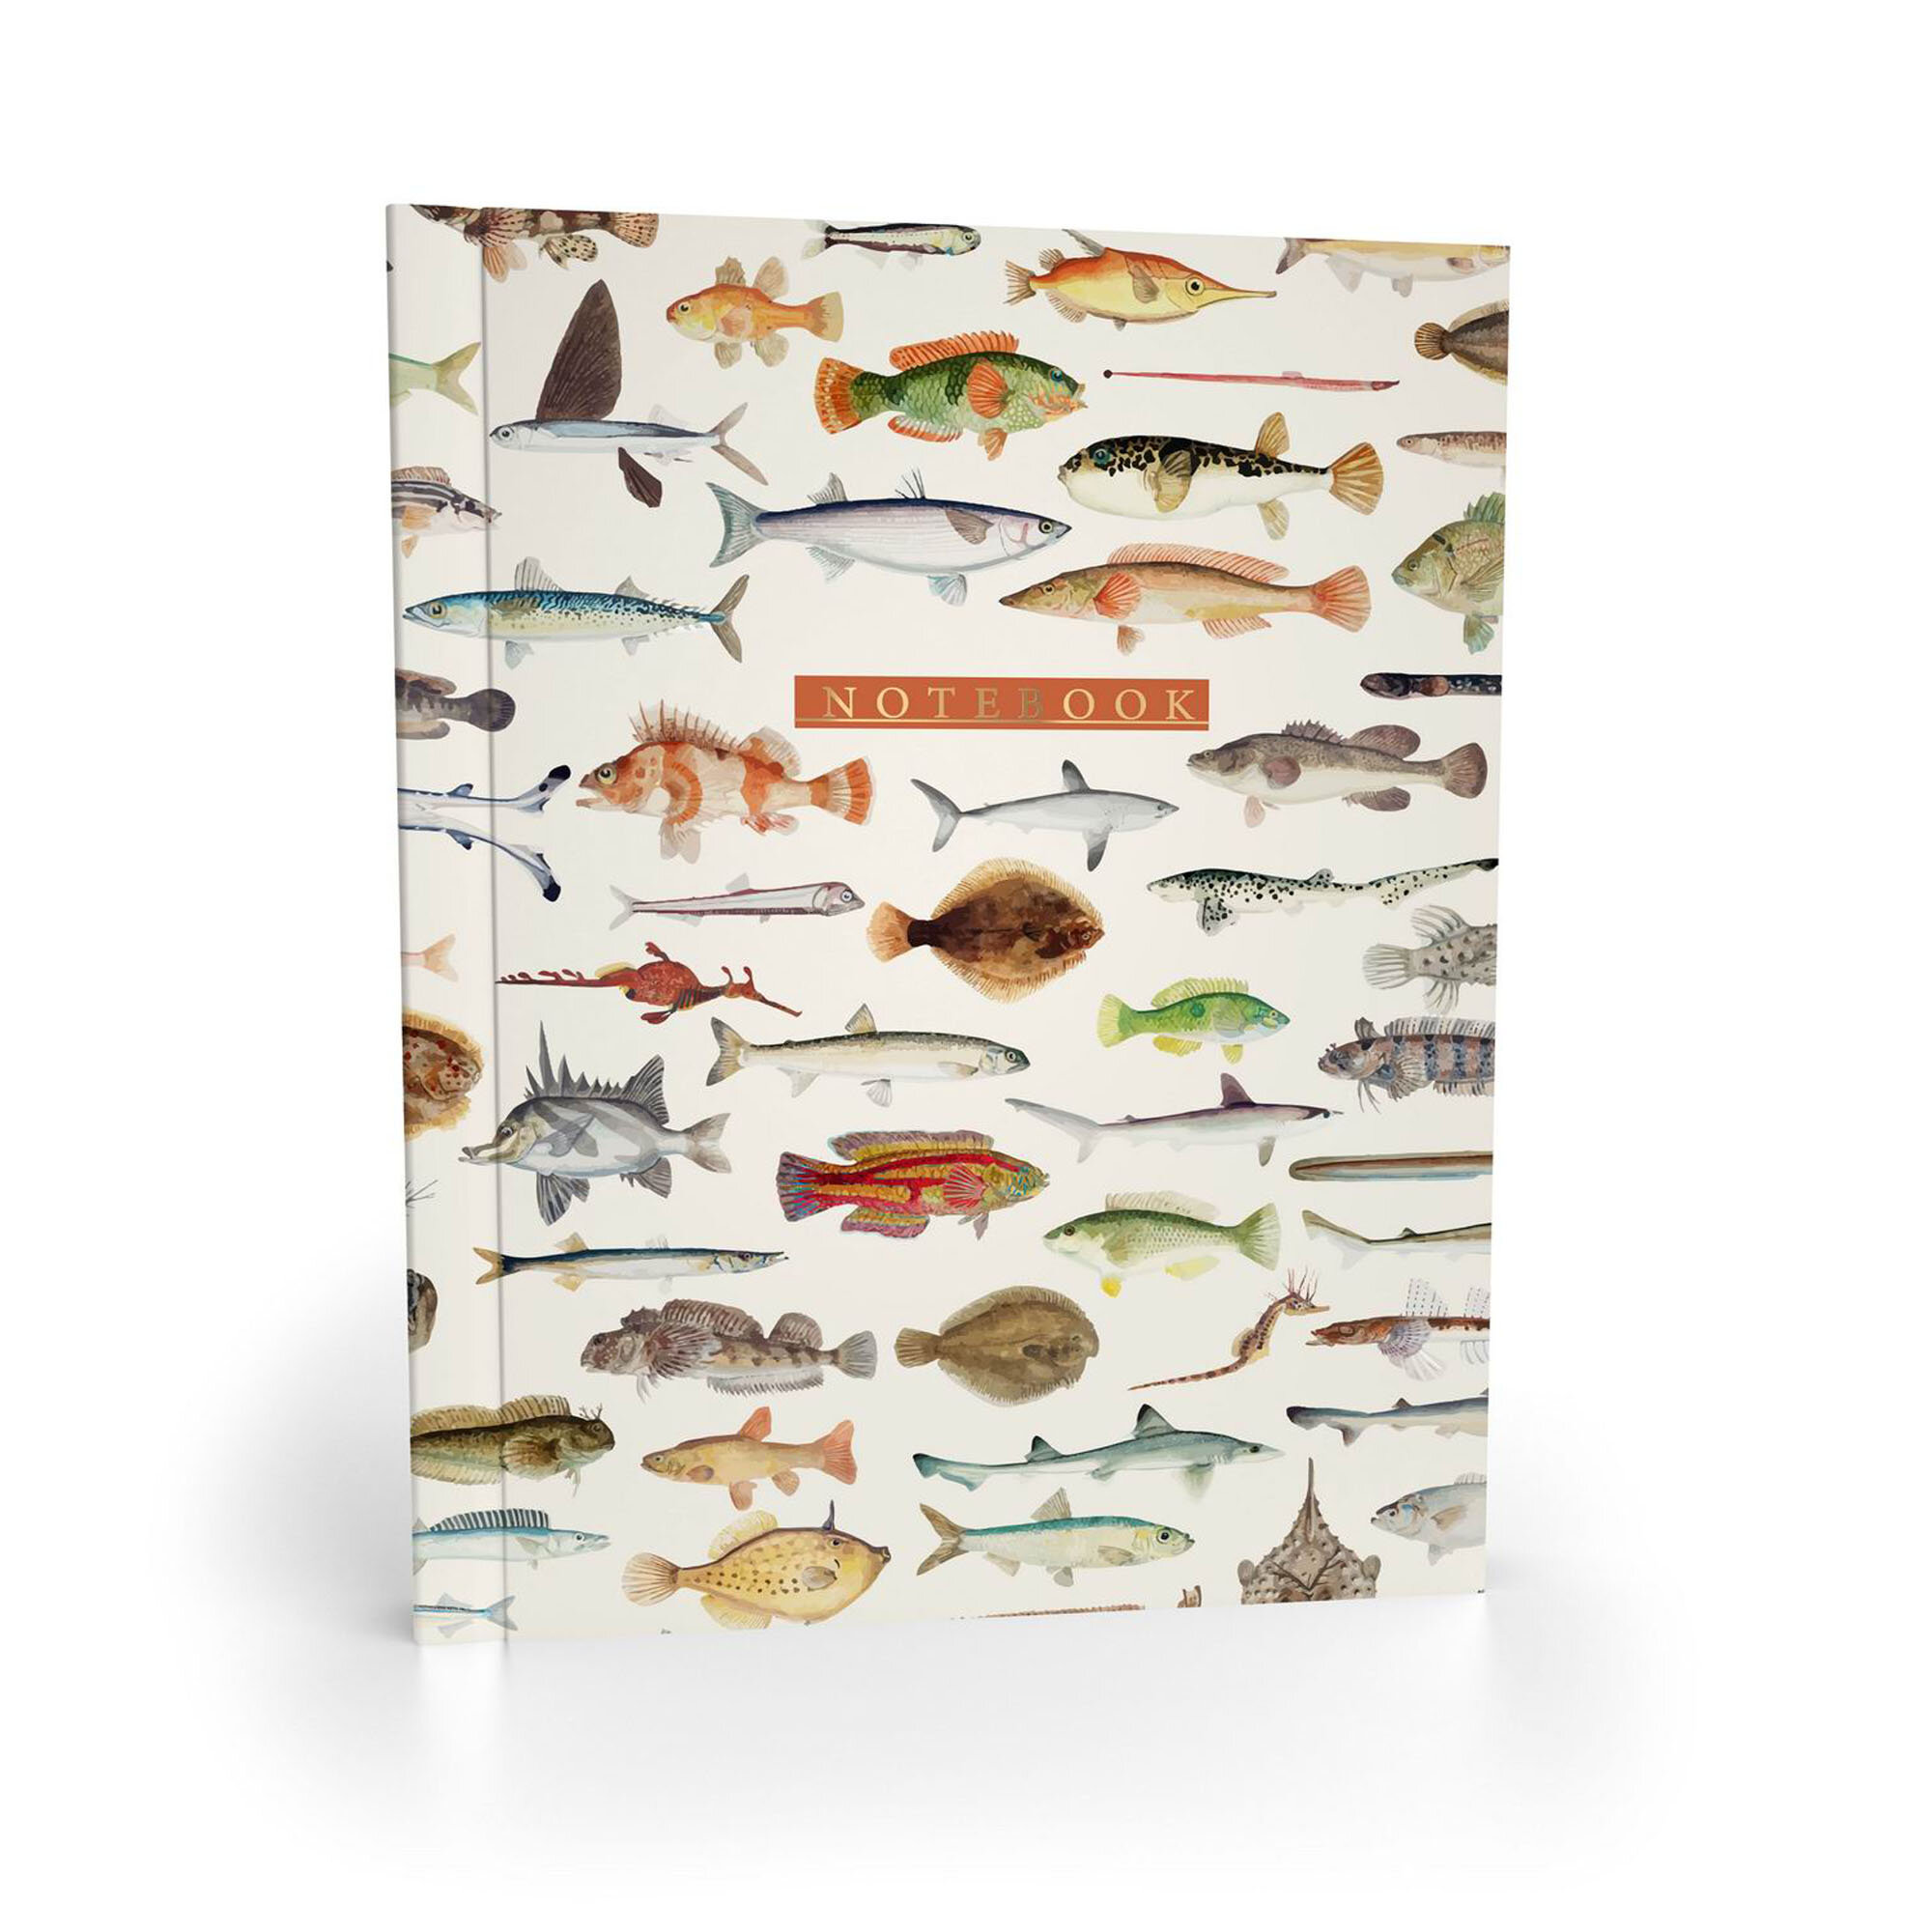 Записная книжка "Рыбы" А6+, в клетку,64 л, интегральная обложка, Academy Style,11142